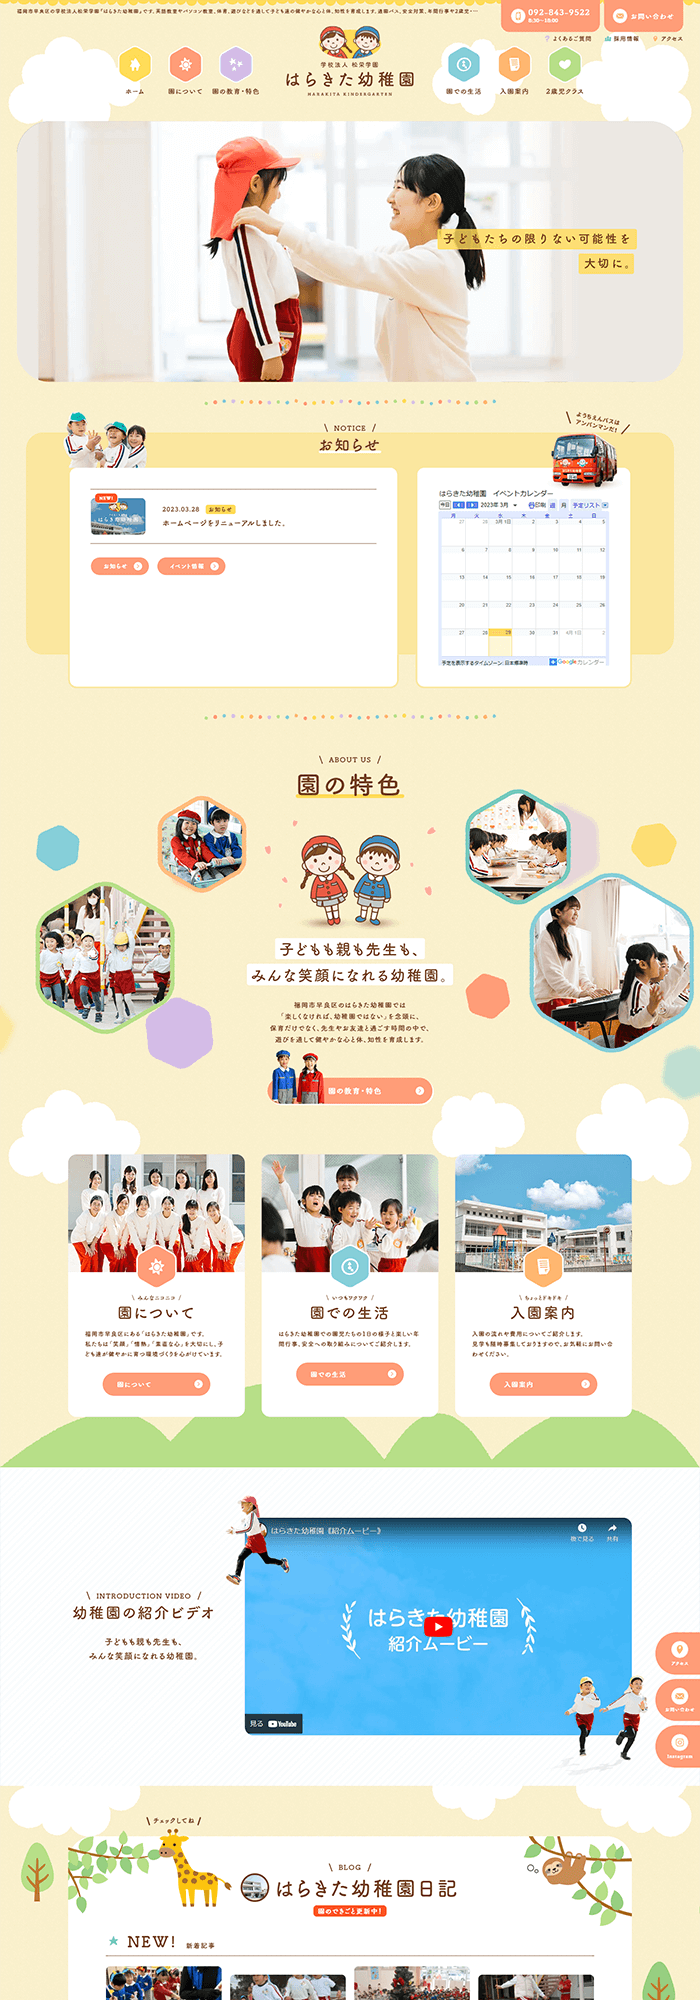 学校法人 松栄学園「はらきた幼稚園」様 ホームページ制作実績 デスクトップイメージ